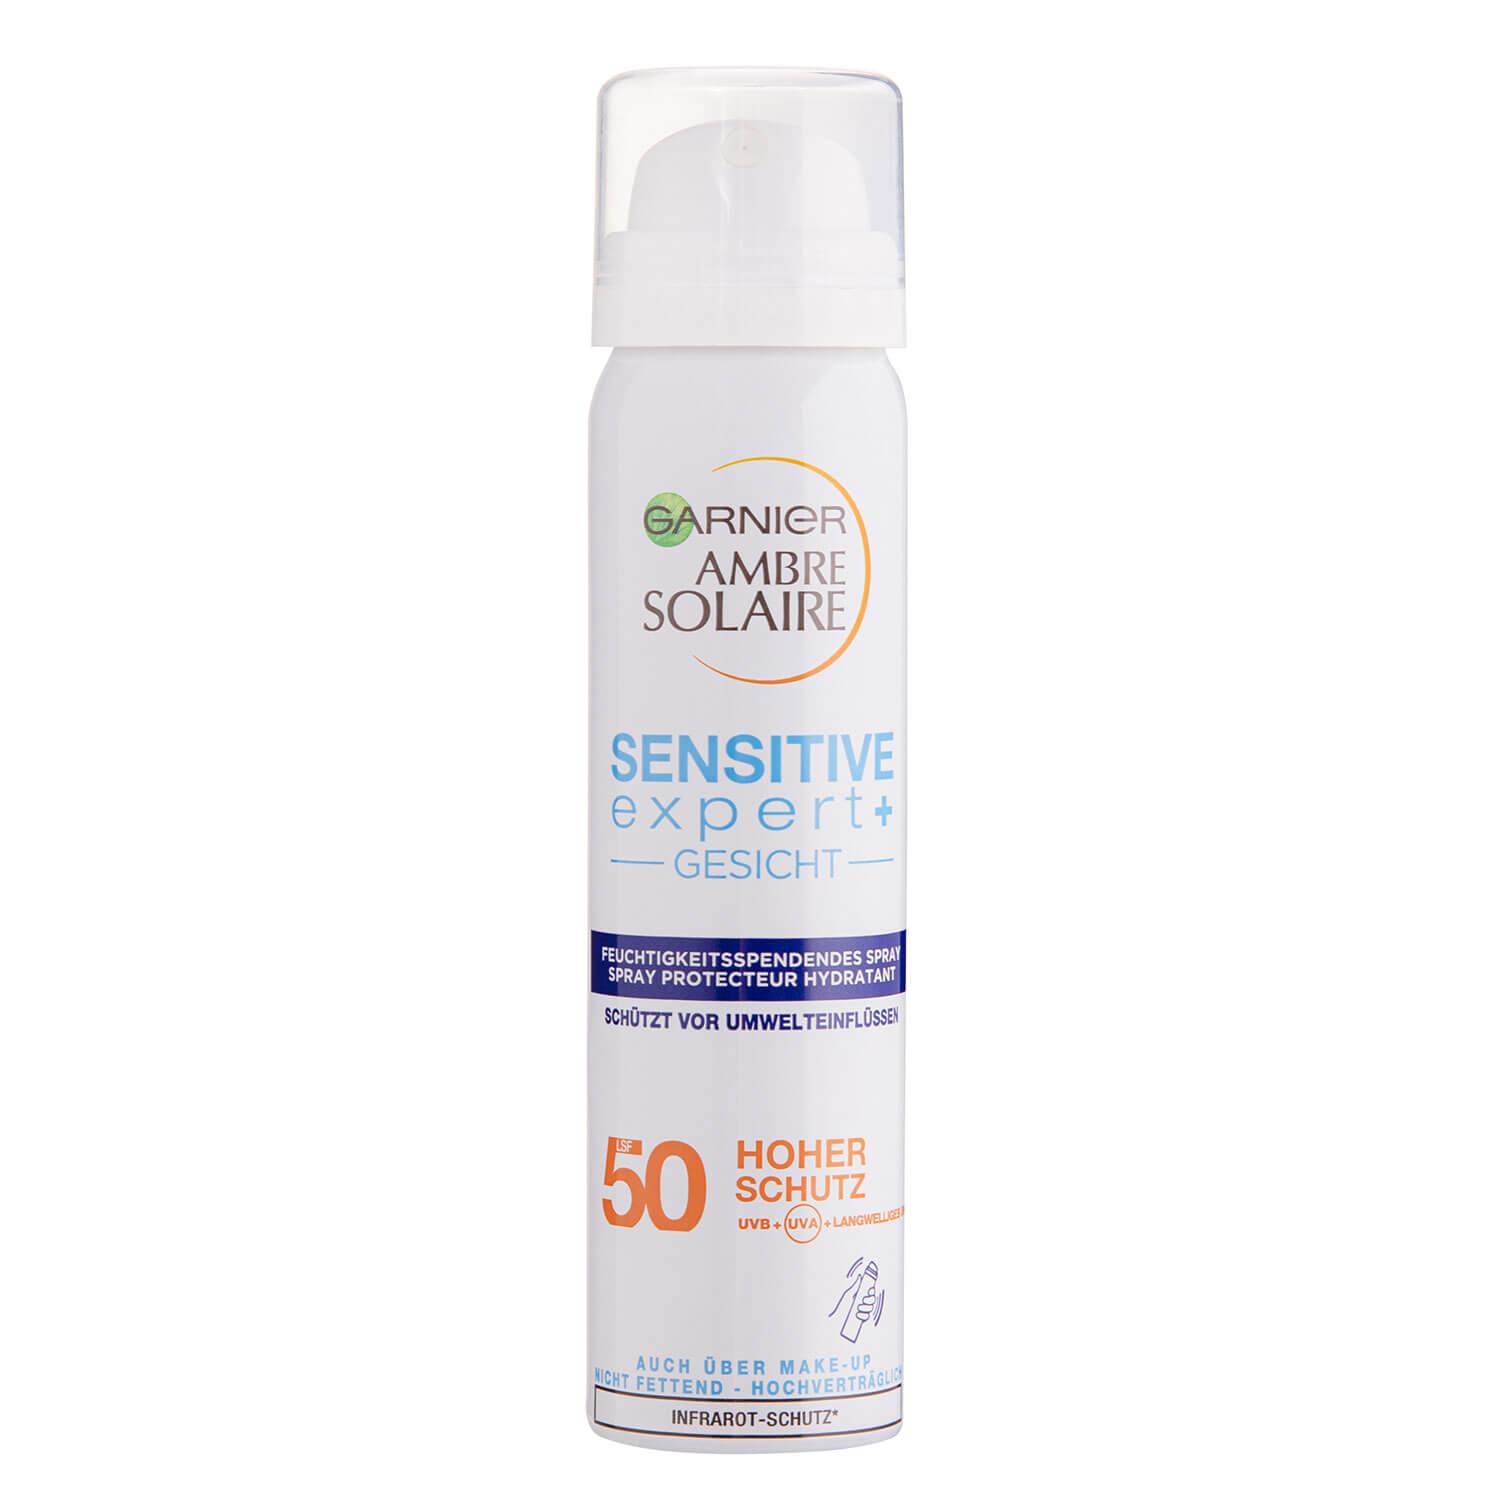 Ambre Solaire - Sensitive expert+ Moisturising Face Protection Spray SPF50